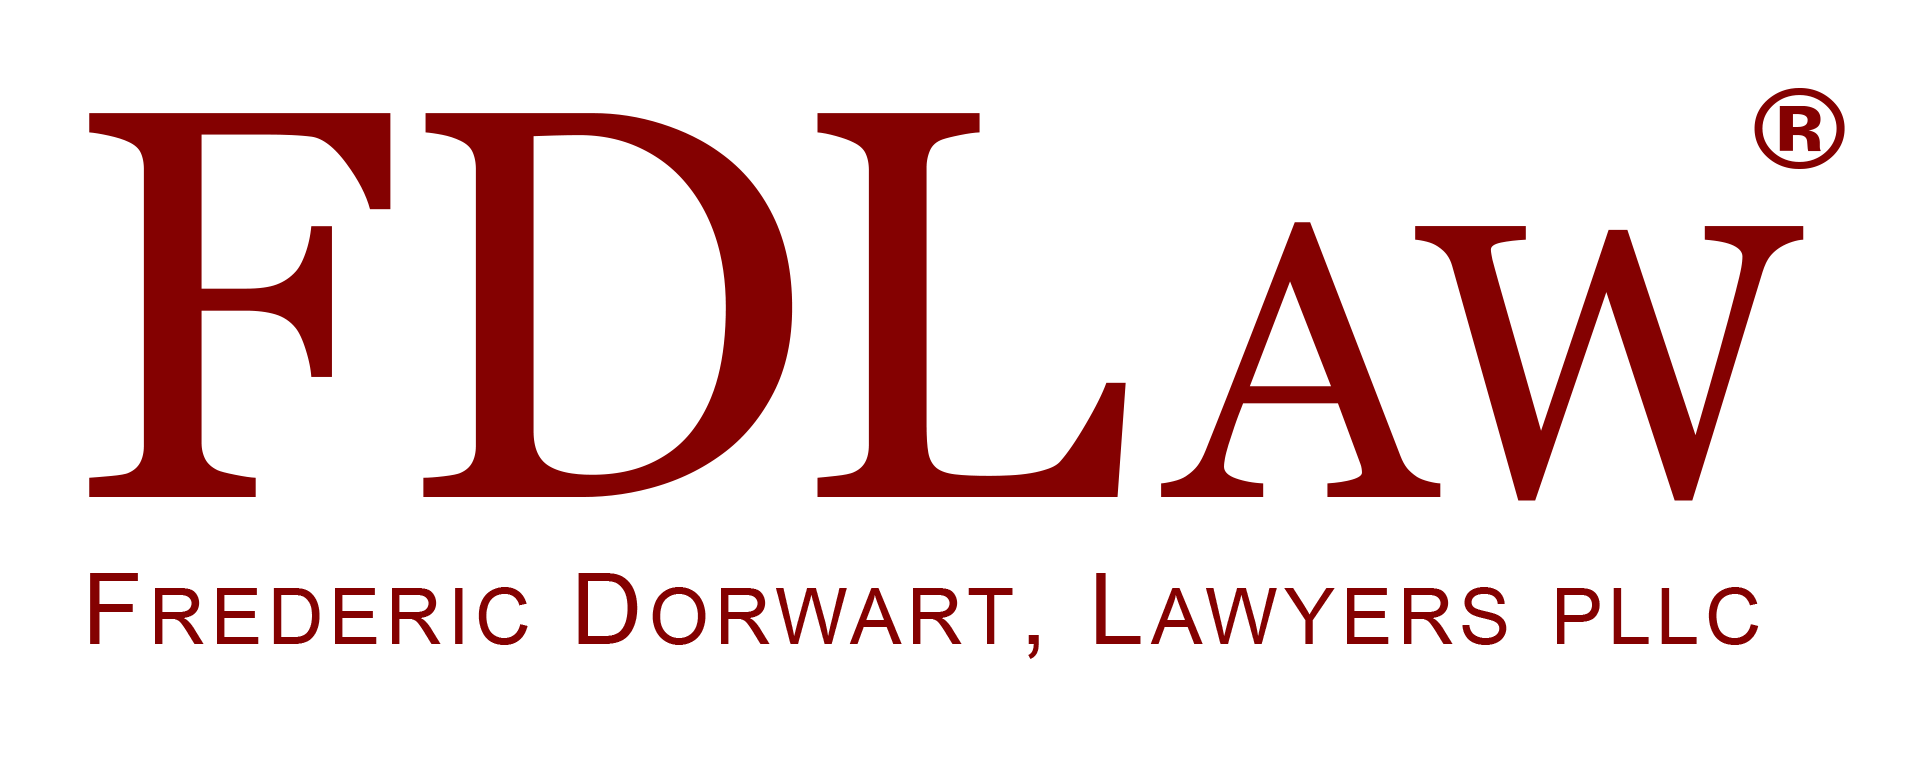 Fd Law logo